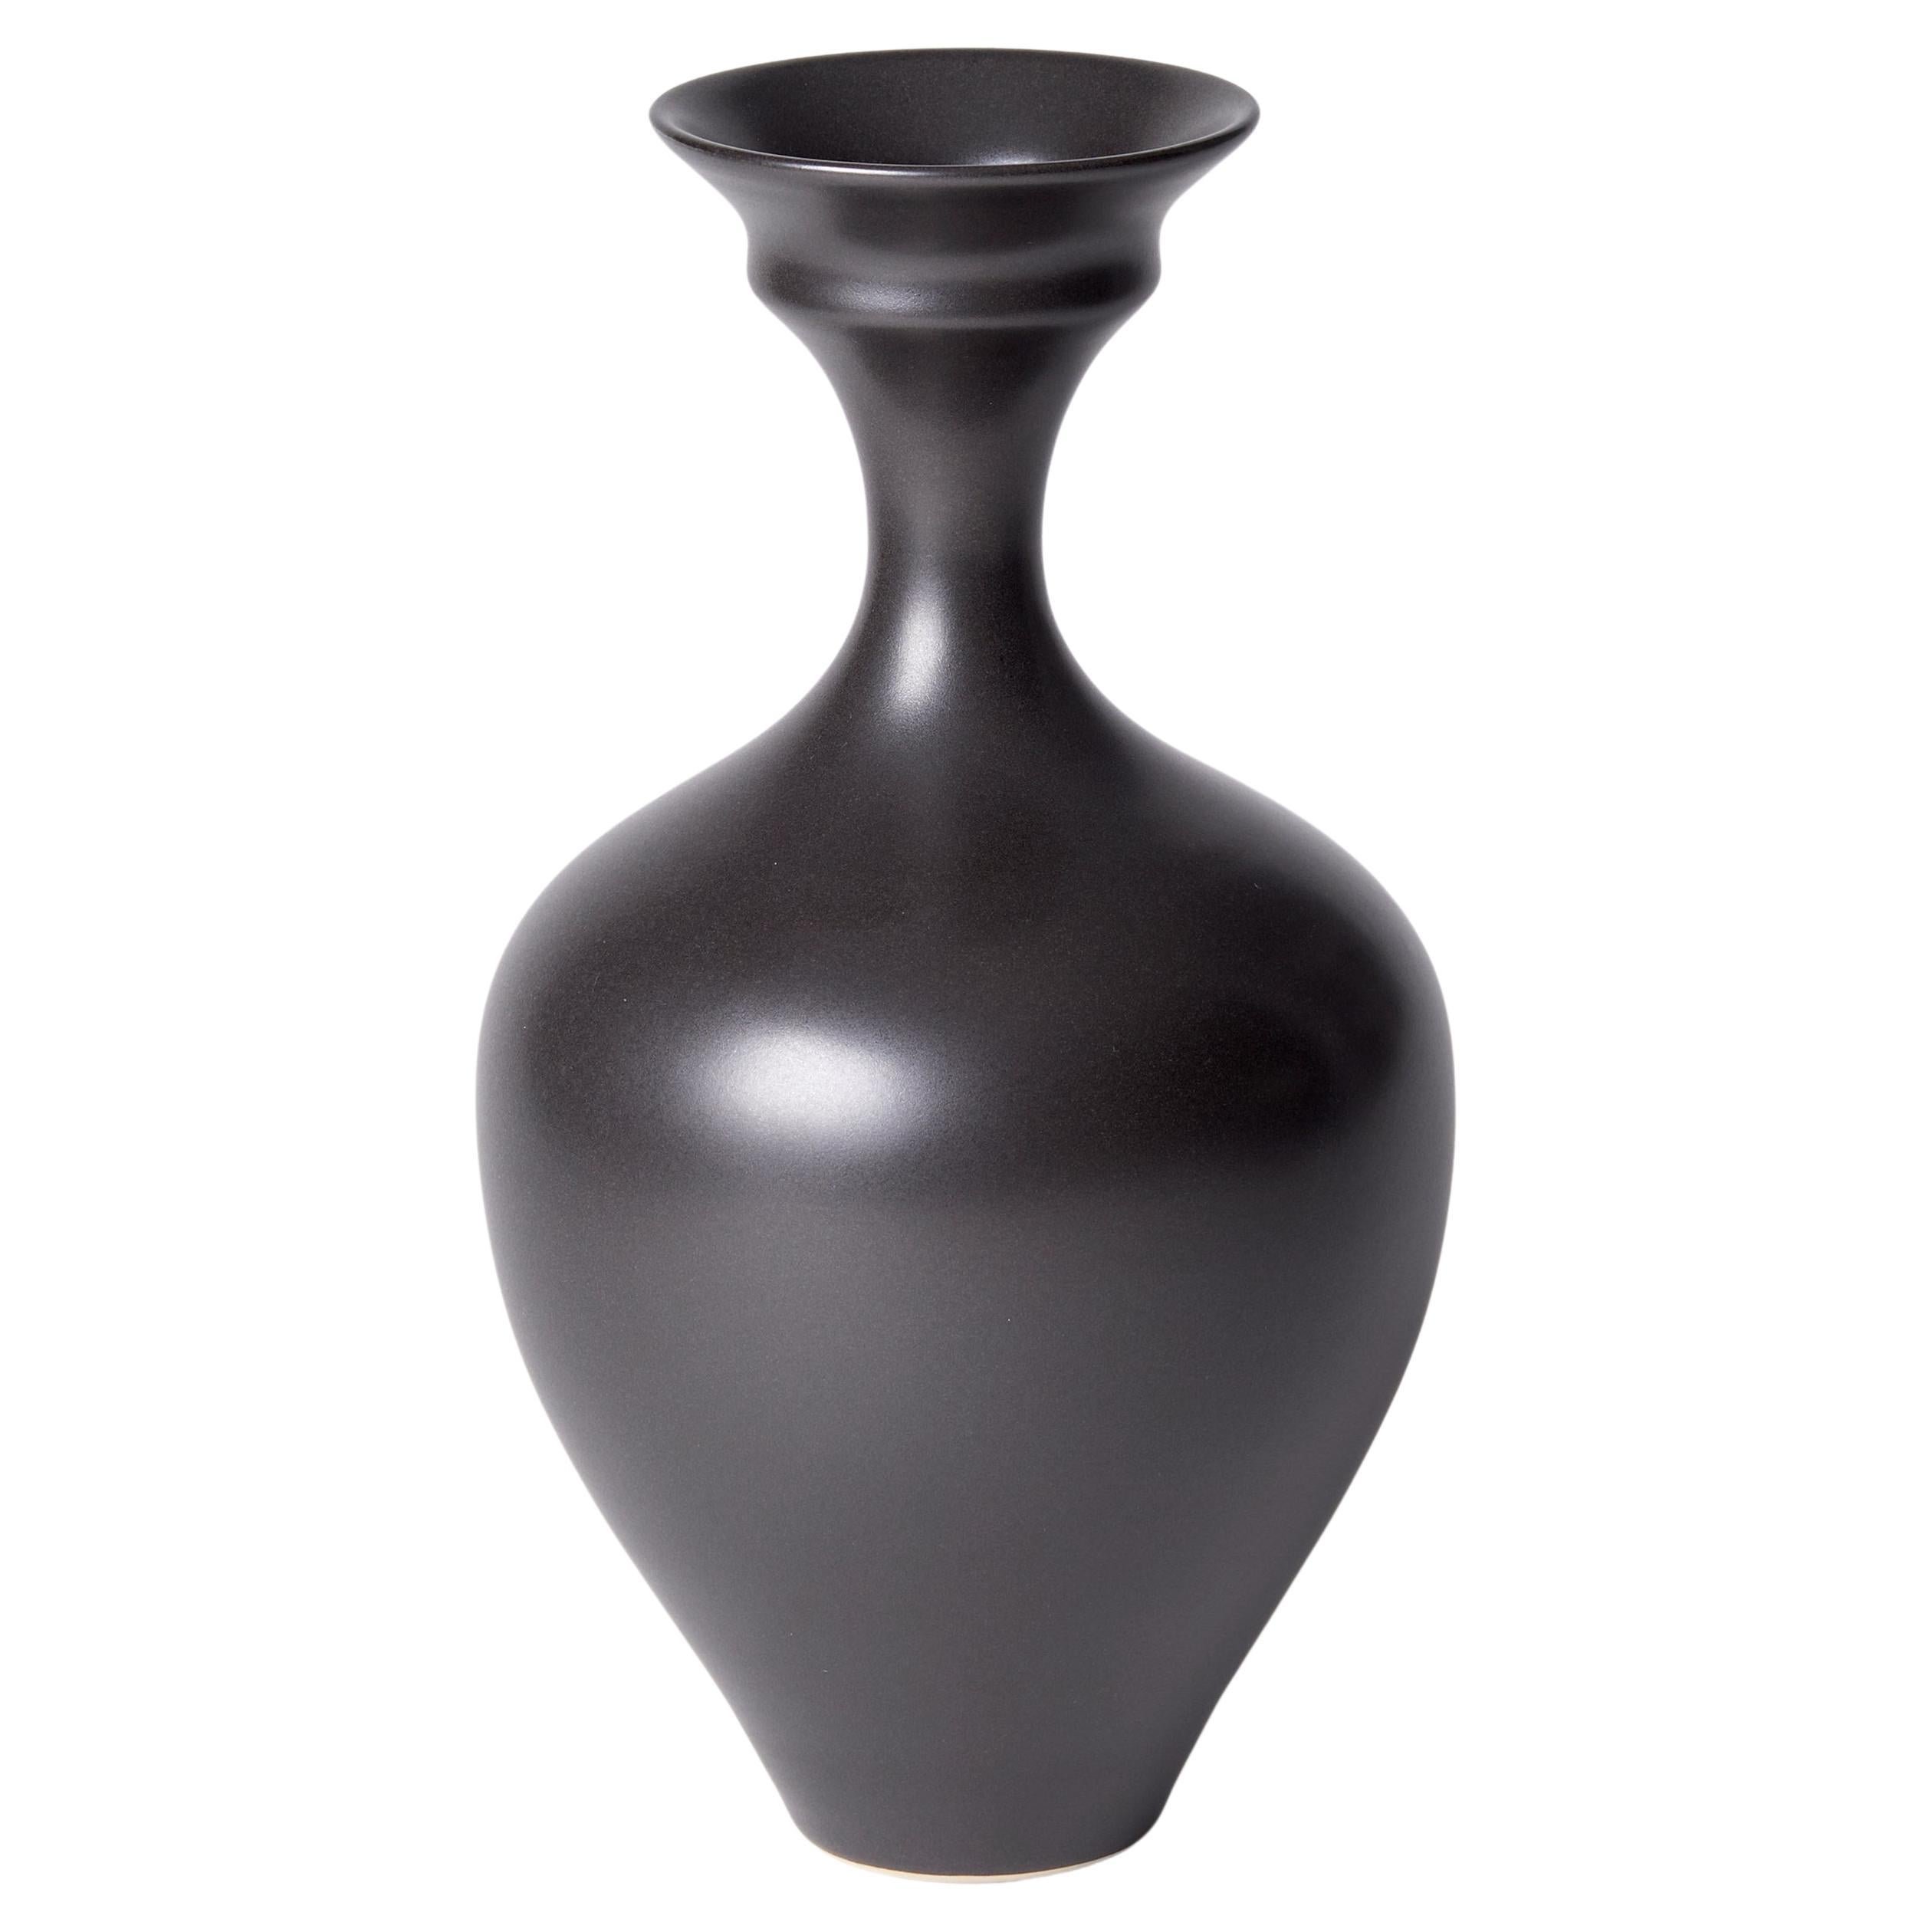 Schalenvase III, eine einzigartige Vase aus schwarzem / ebenholzfarbenem Porzellan von Vivienne Foley